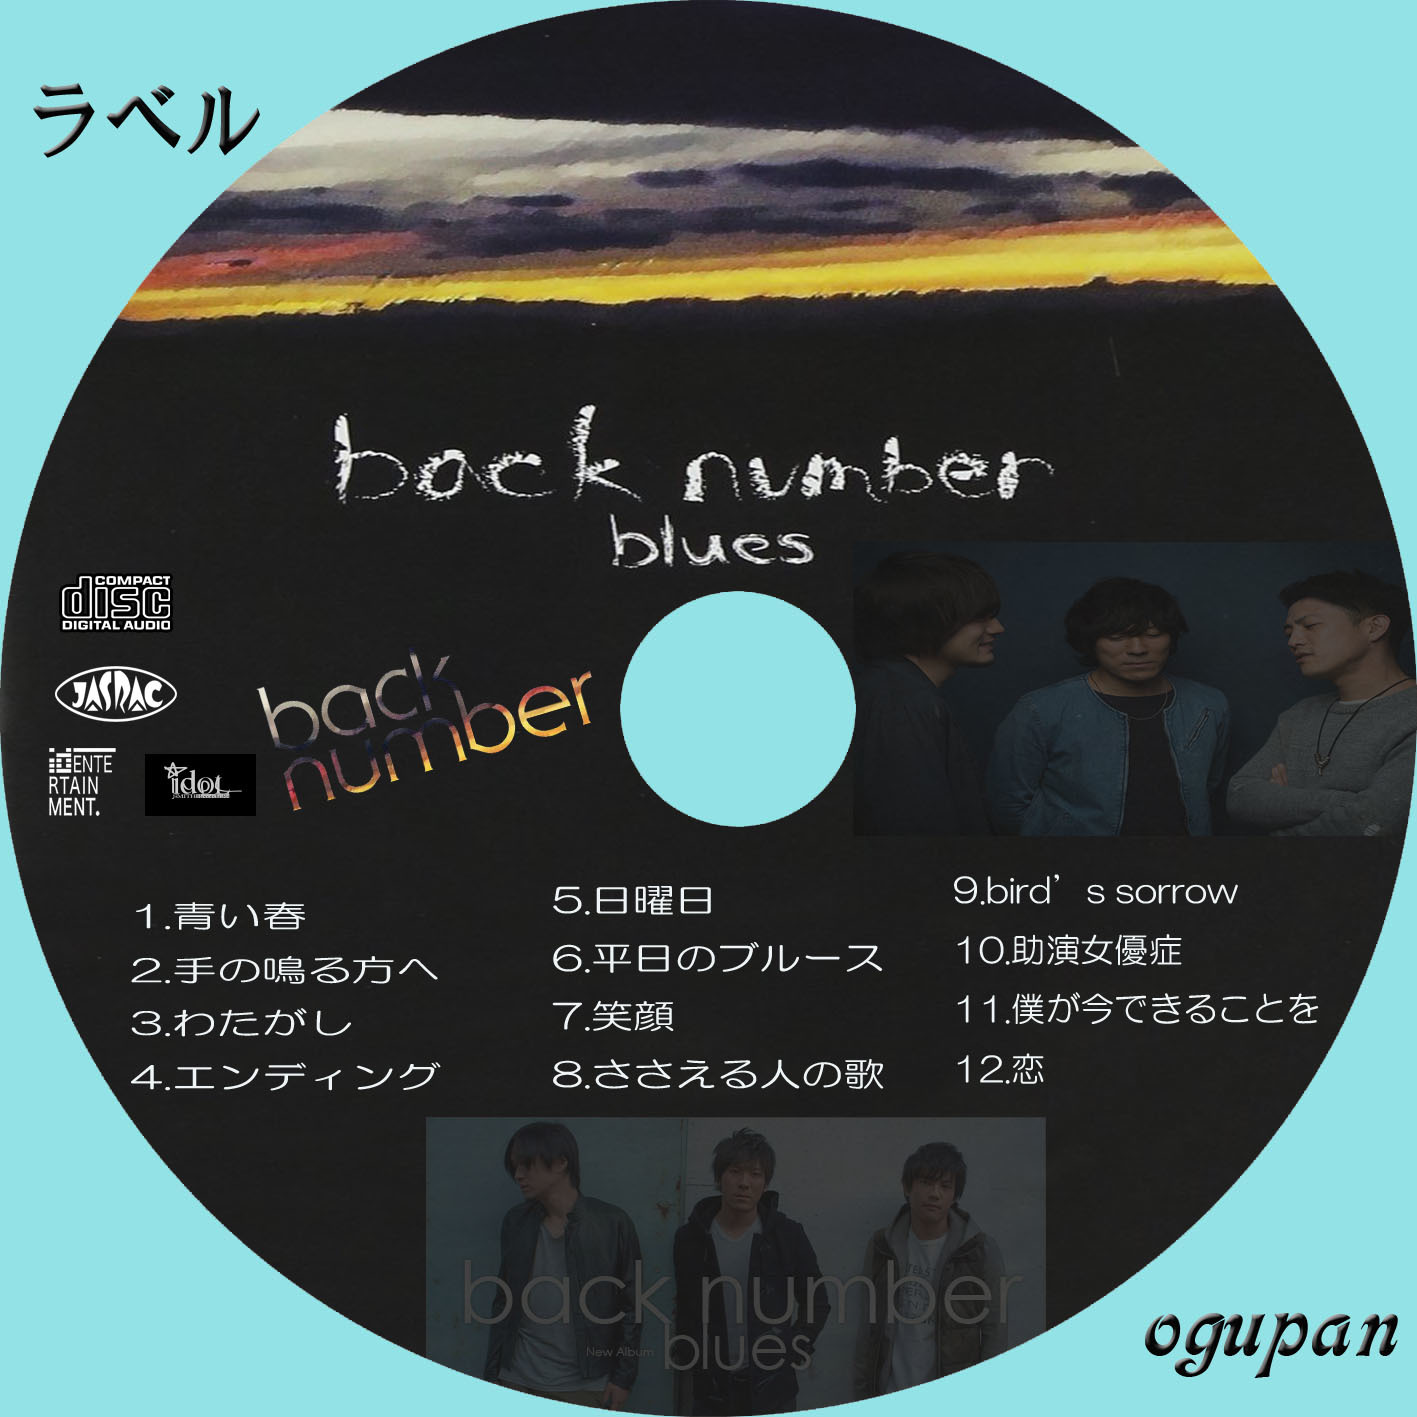 backnumber CD - CD